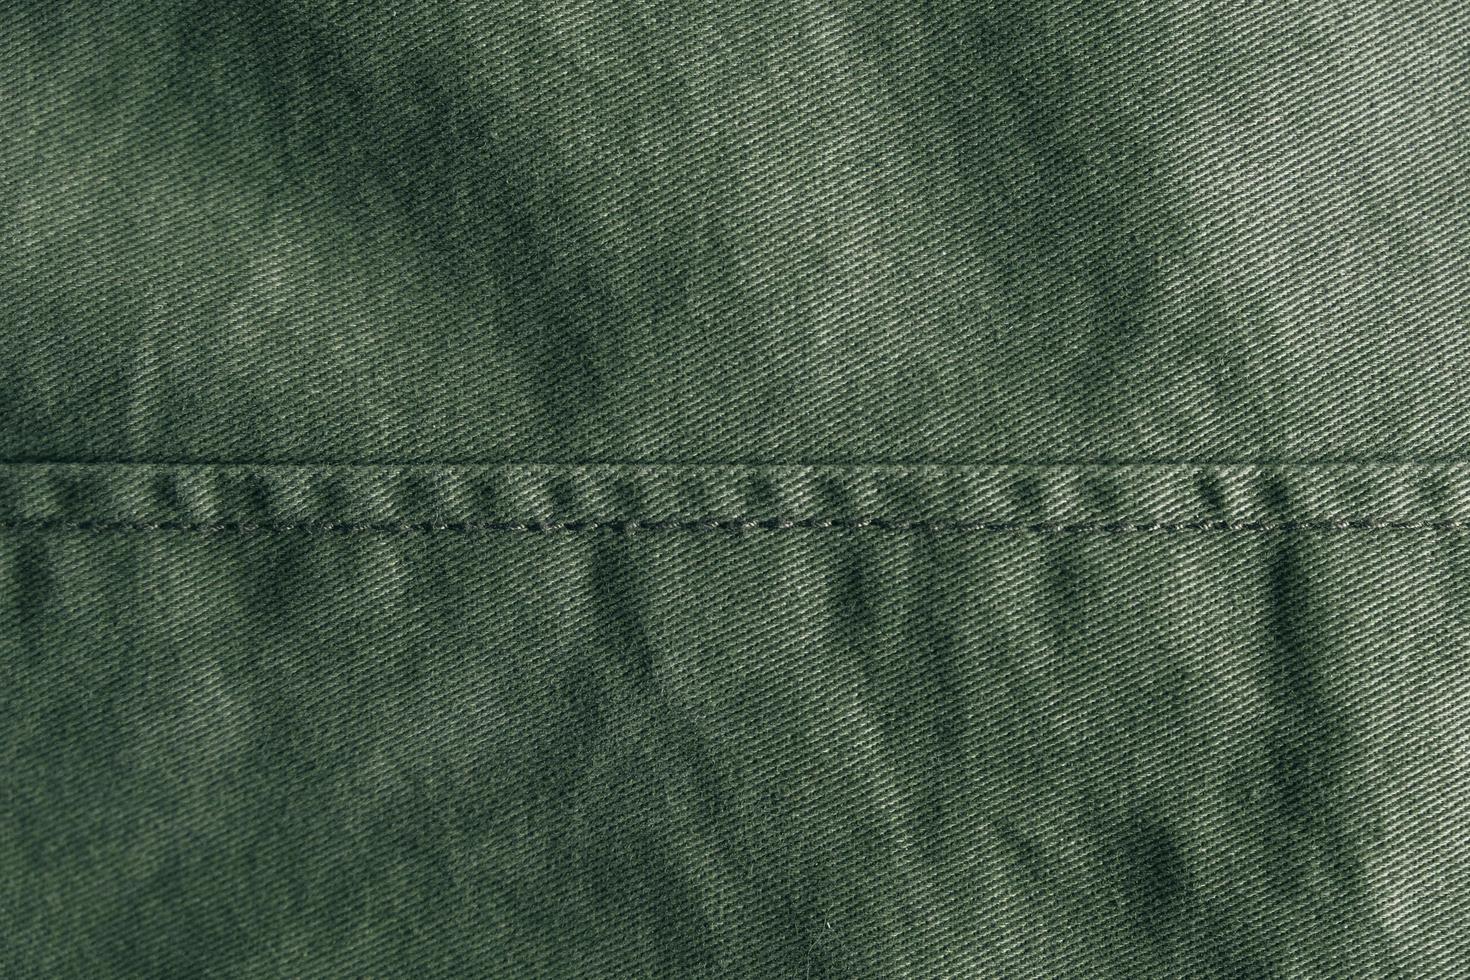 fond denim vert orné d'une couture. texture de couture en denim vert photo